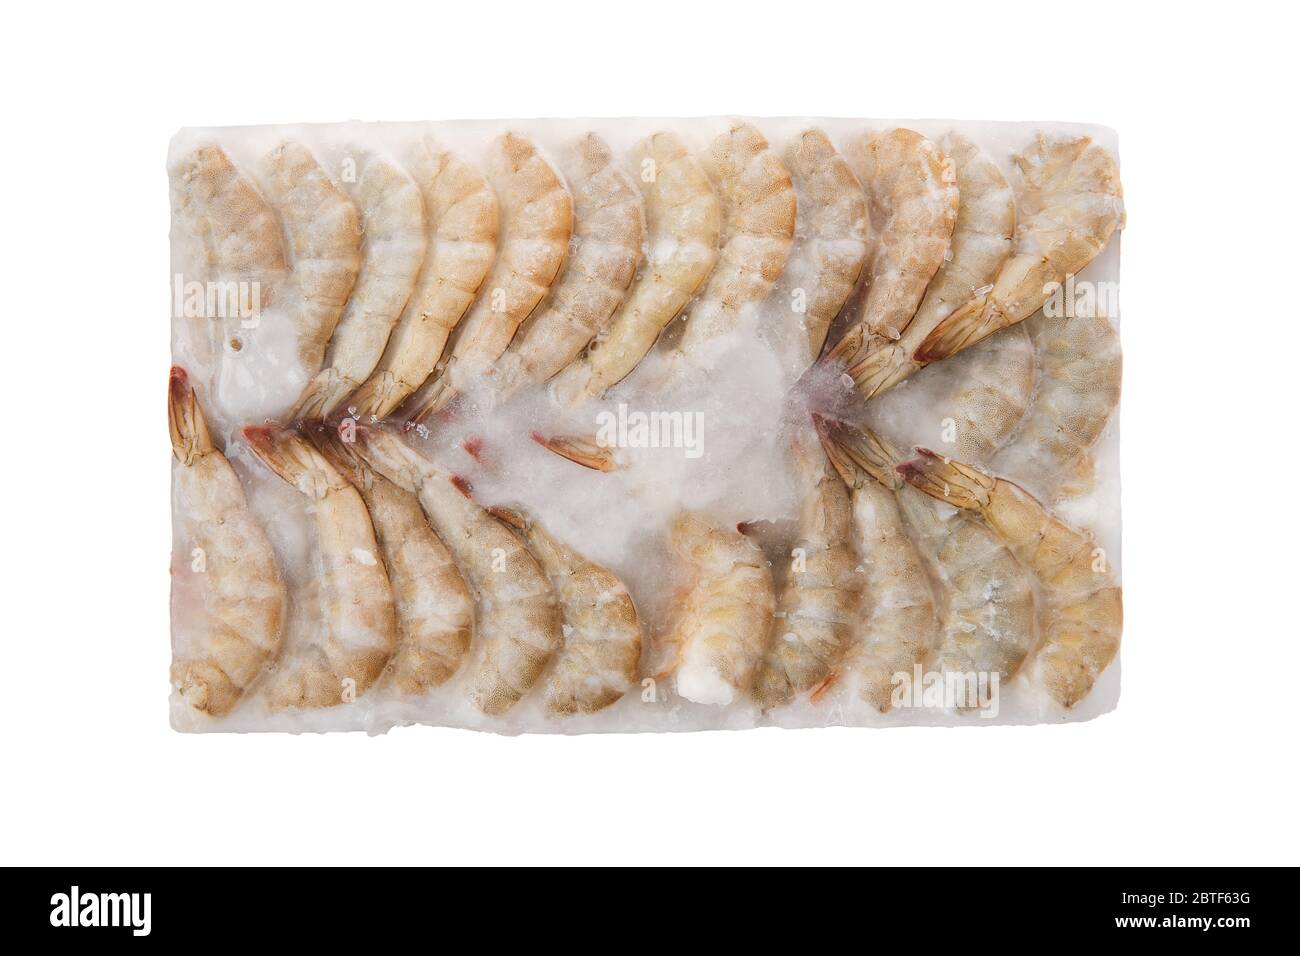 Crevettes tigrées crues congelées dans un grand cube de glace isolé sur fond blanc Banque D'Images